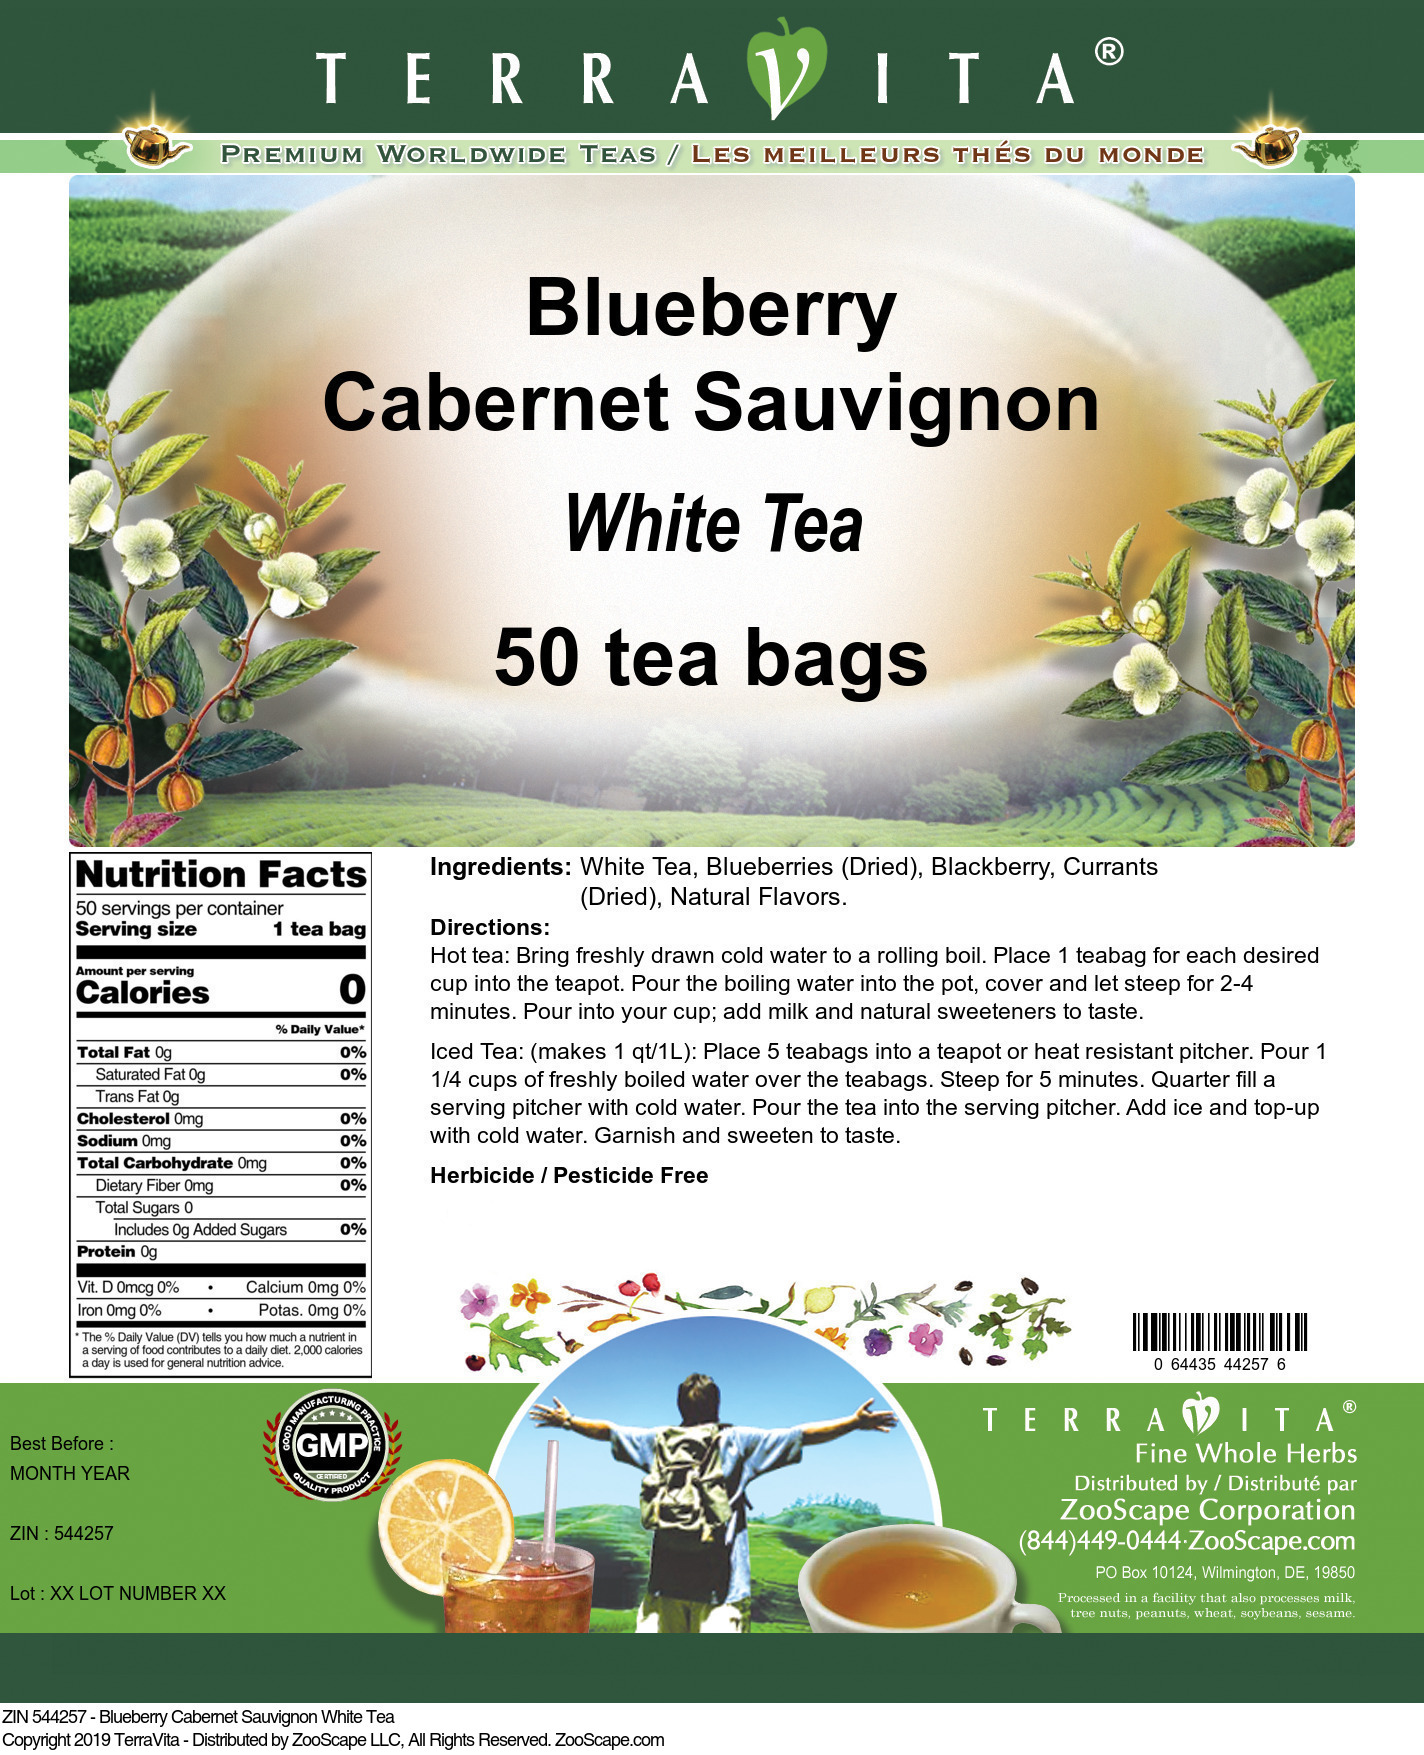 Blueberry Cabernet Sauvignon White Tea - Label